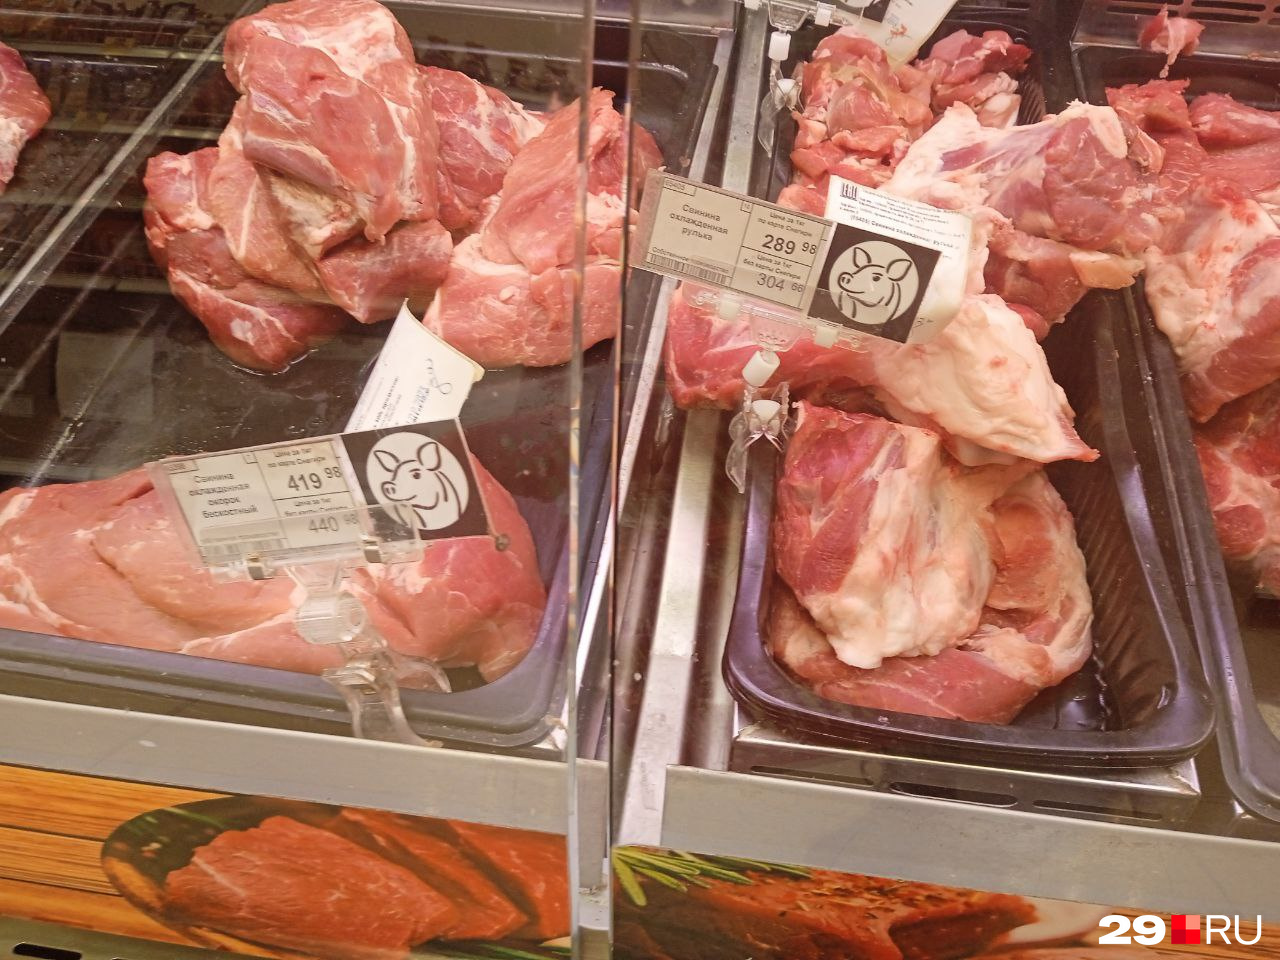 Цены за кило сырого мяса: на переднем плане окорок, позади рулька